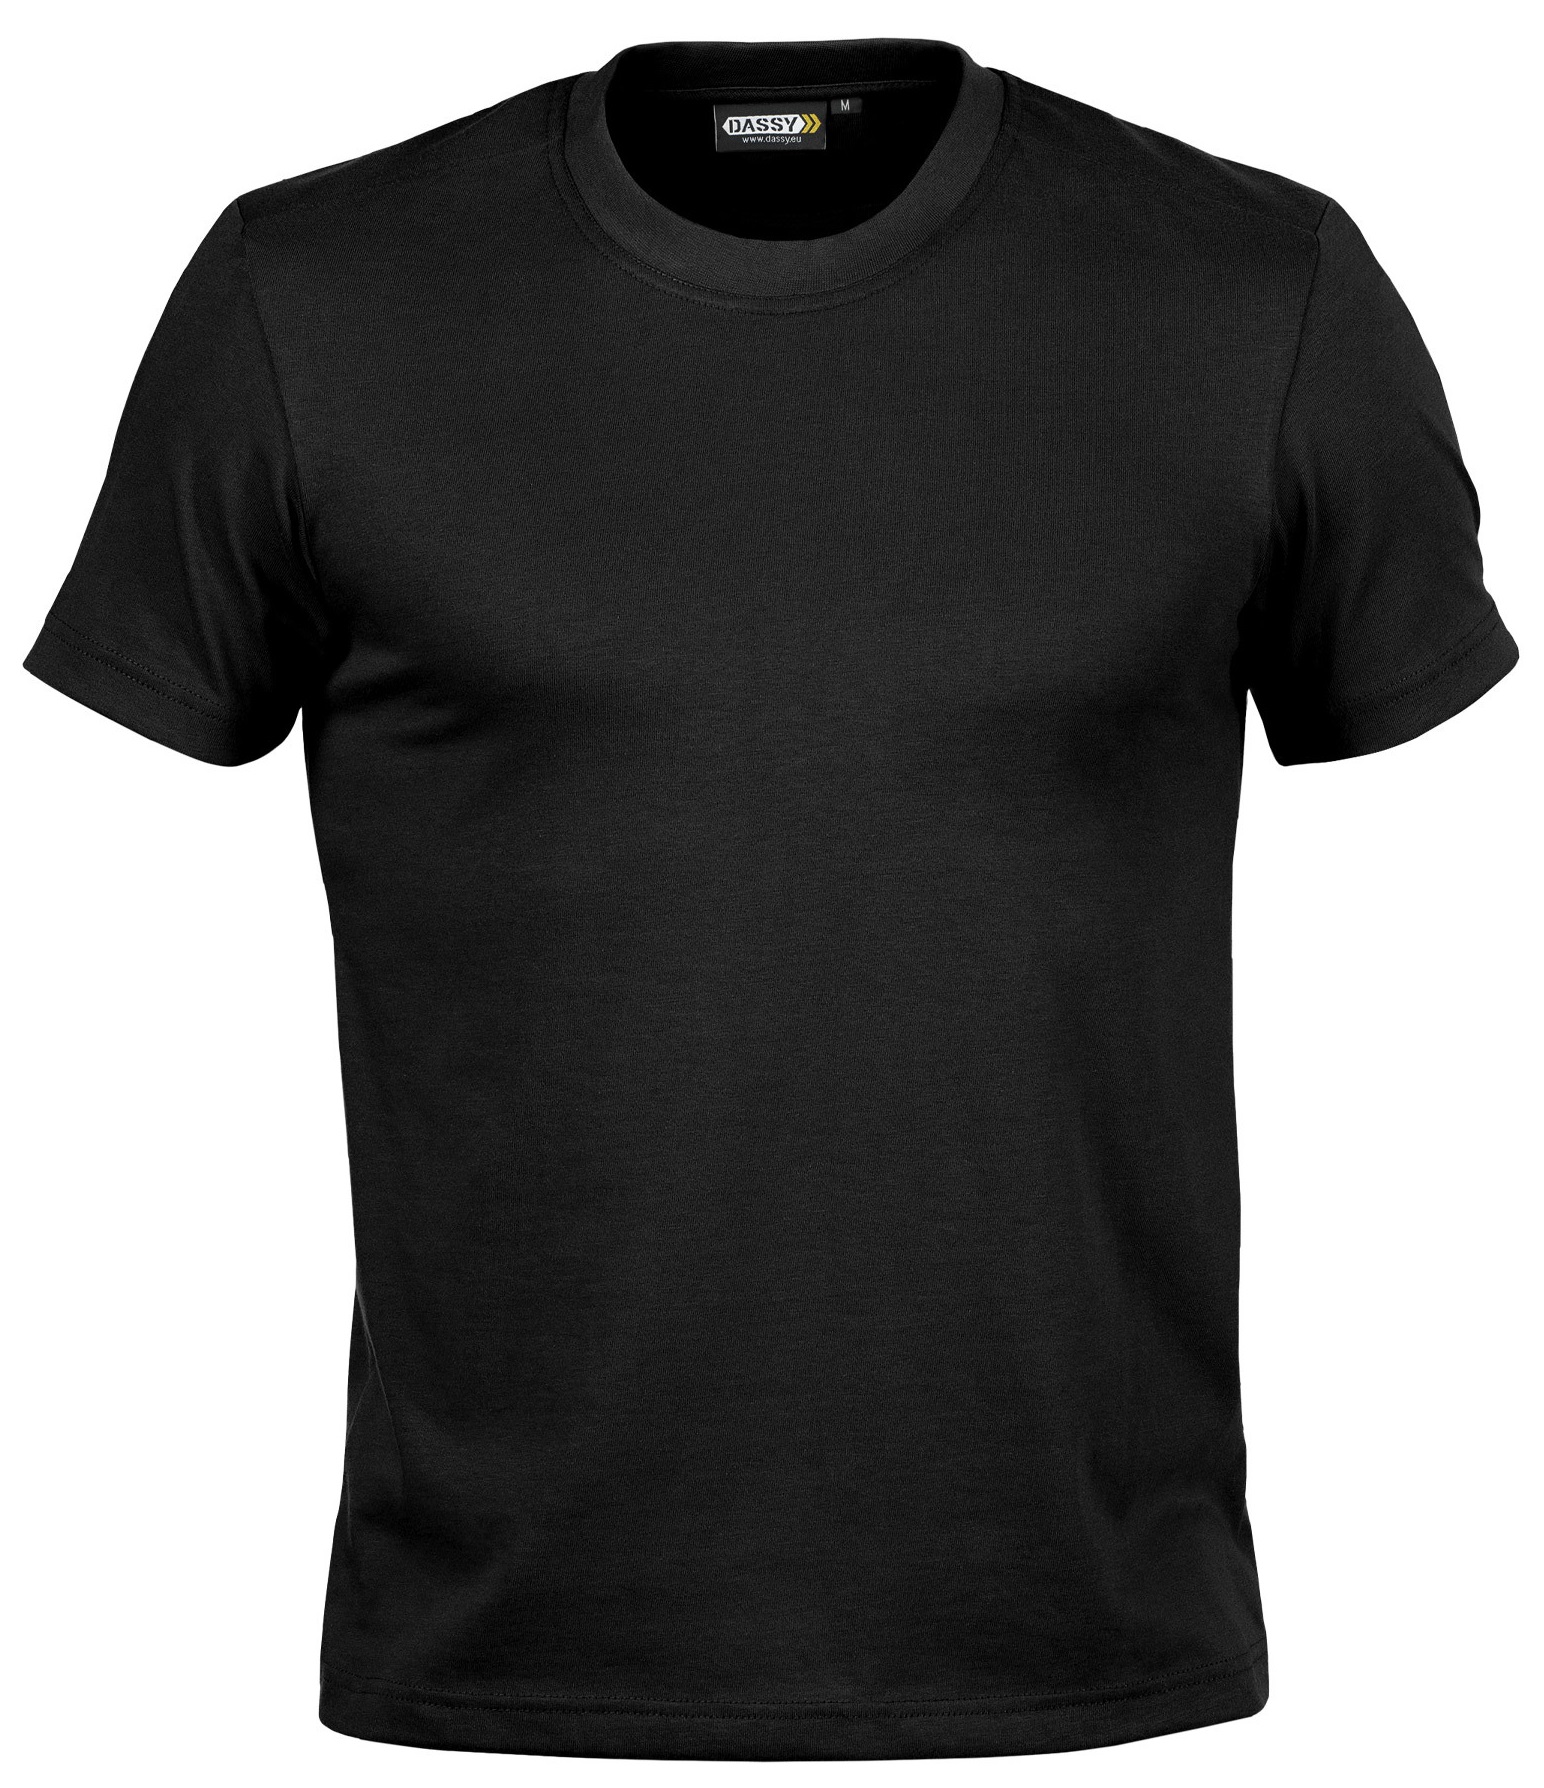 DASSY Victor T-Shirt für häufige Industriereinigungen